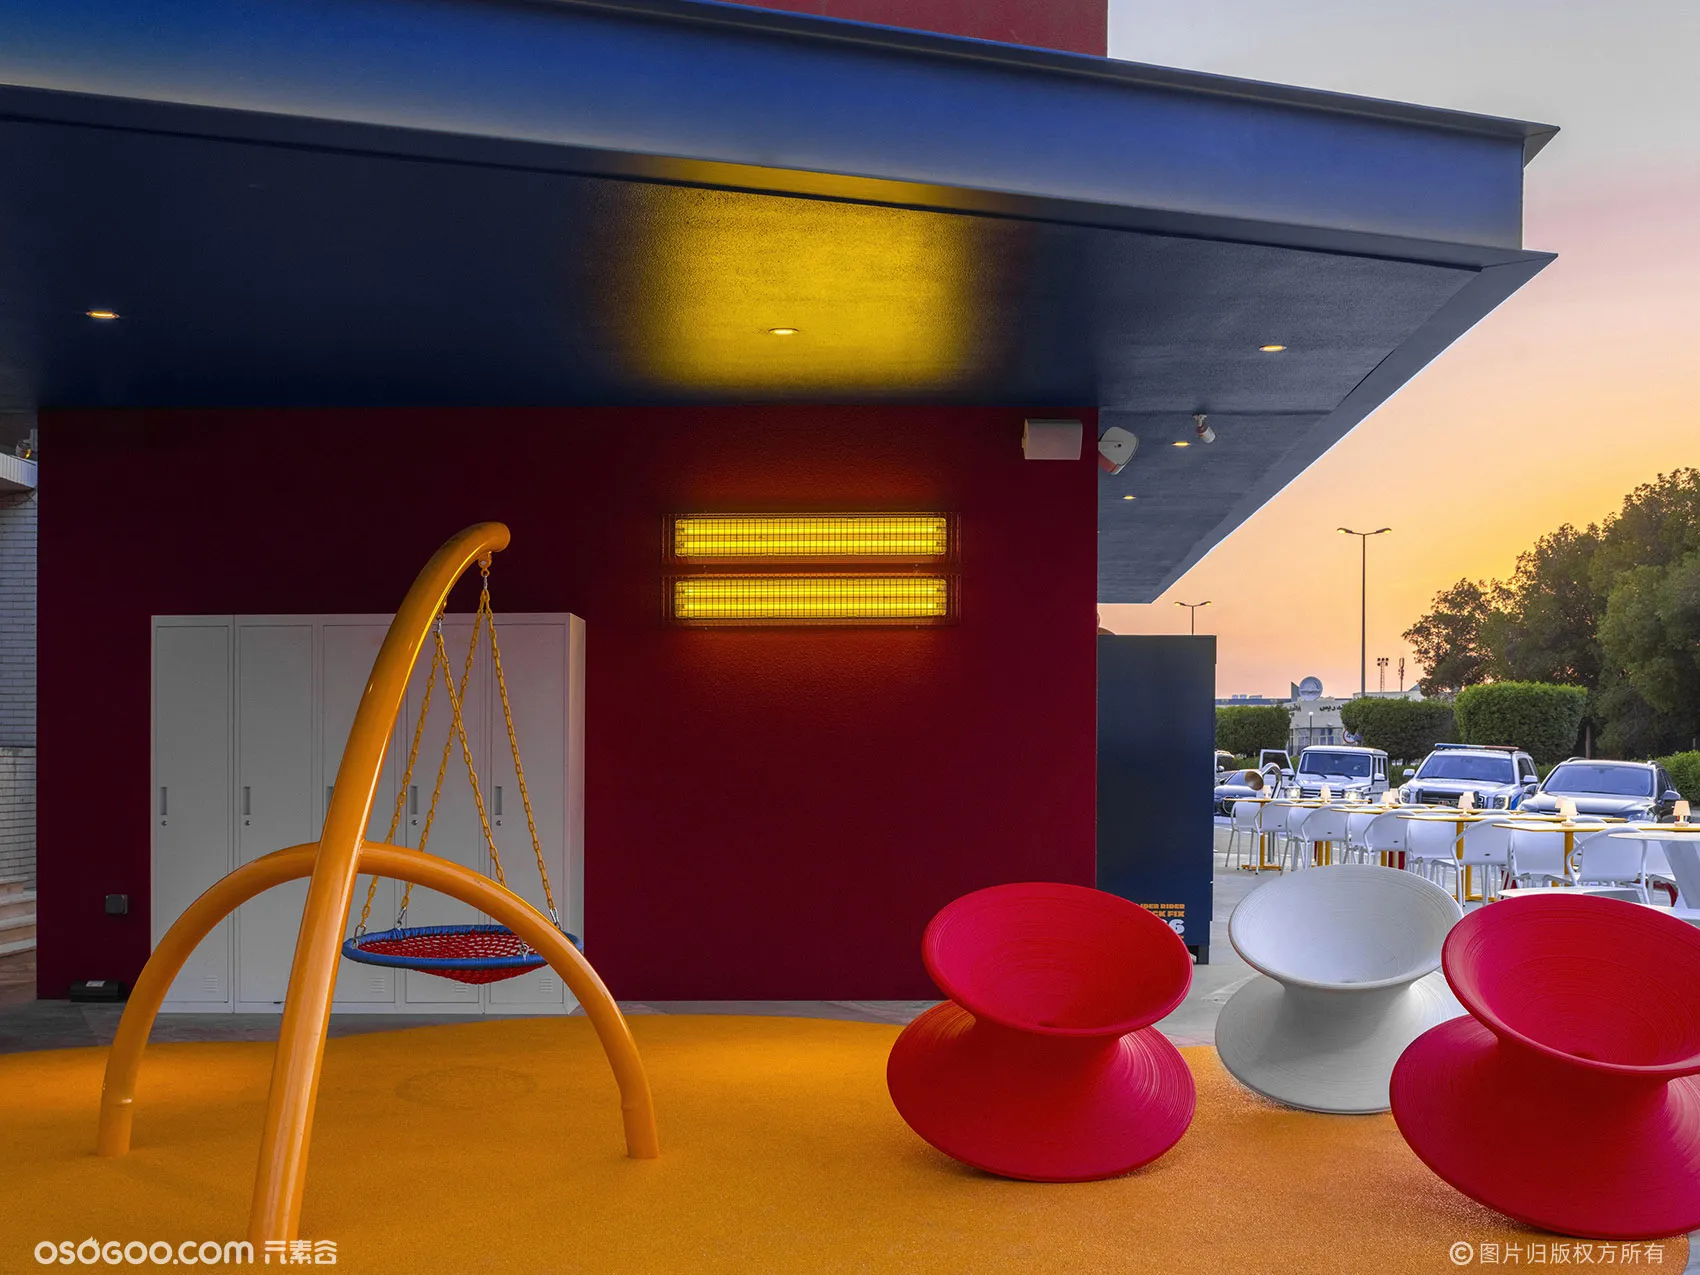 科威特·Pattie Pattie美式加州风汉堡店设计